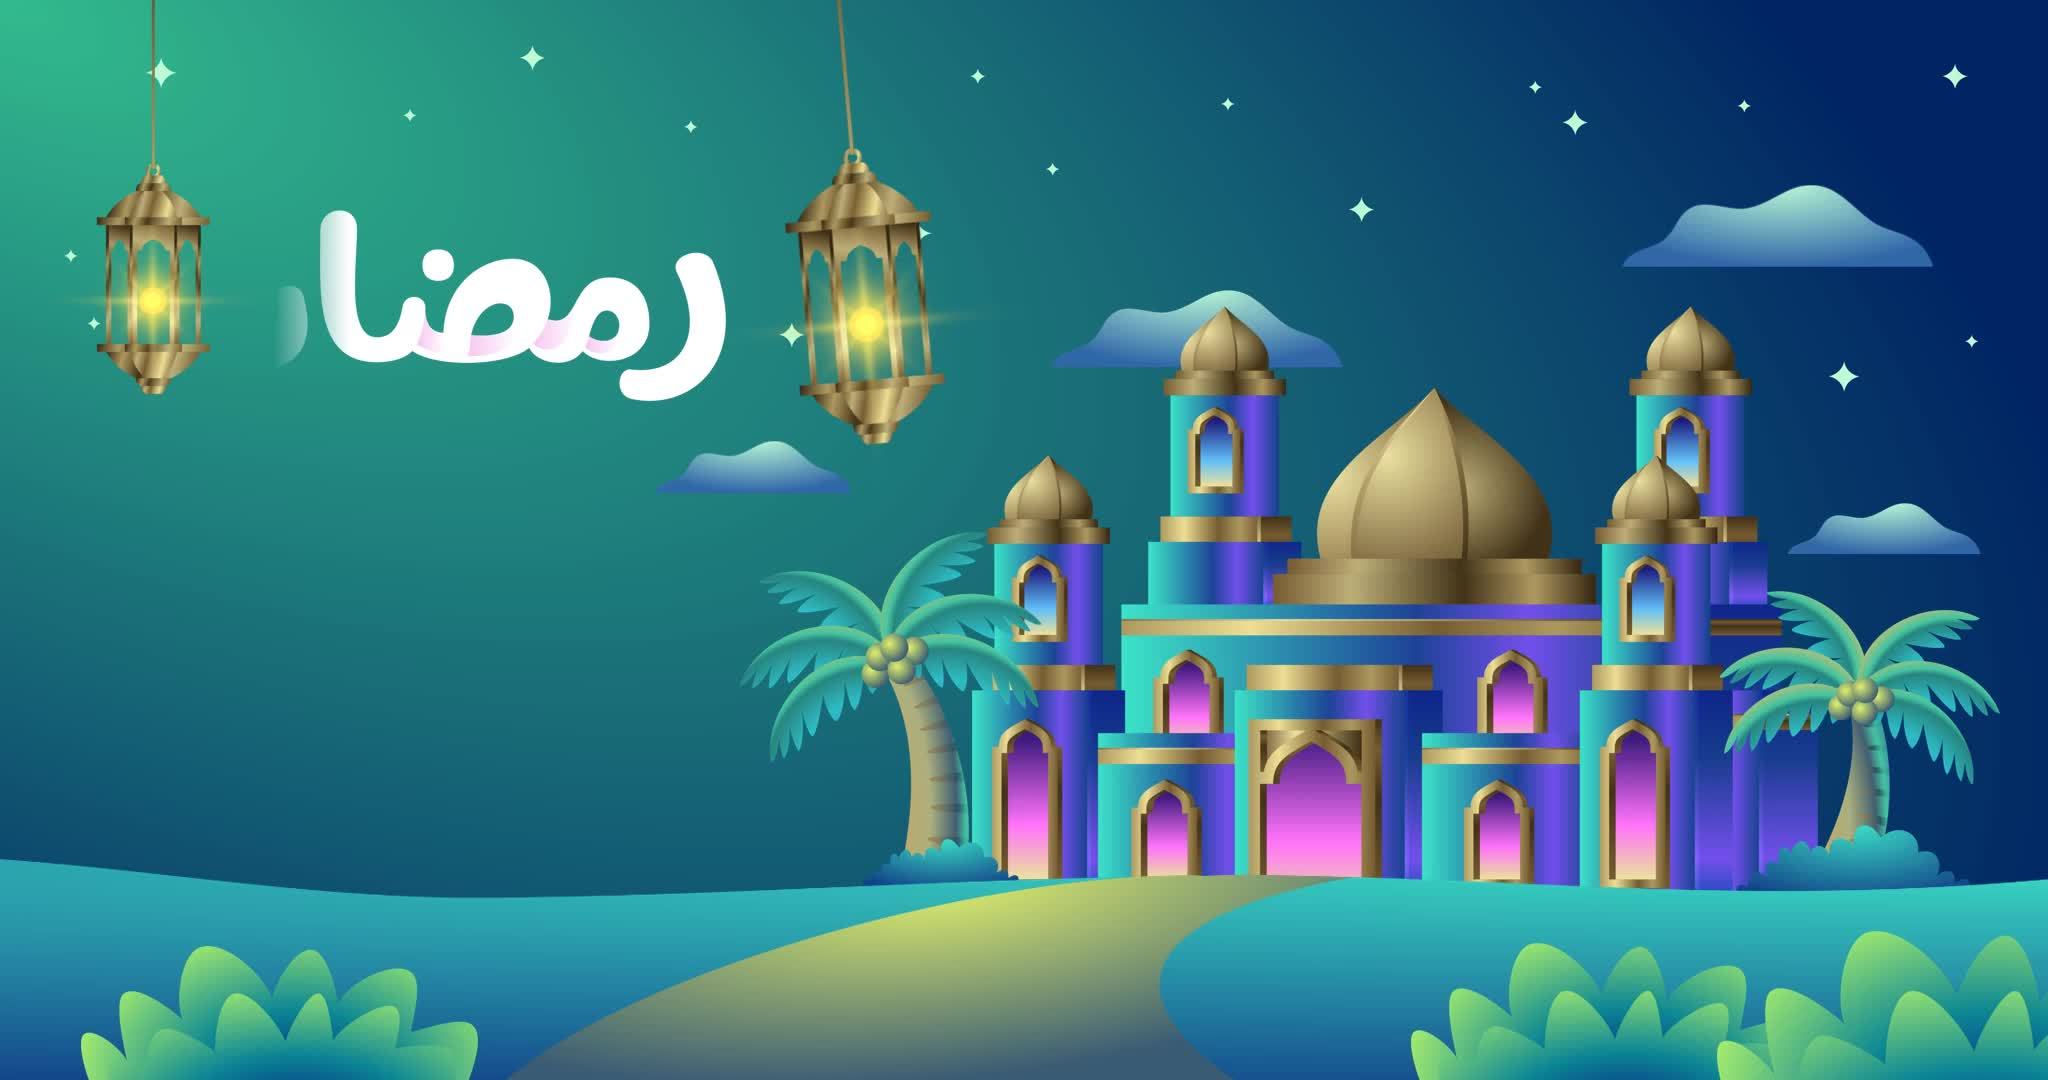 Mẫu banner Ramadan Mubarak với ngôi đền xanh 3D đẹp: Bạn đang tìm kiếm một mẫu banner độc đáo để kỷ niệm tháng Ramadan? Hãy xem ngay mẫu banner Ramadan Mubarak có ngôi đền xanh 3D đẹp mắt mà chúng tôi giới thiệu. Banner này mang đến một không gian chuyển động, được thiết kế với những chi tiết độc đáo và ấn tượng. Click để xem chi tiết và đặt hàng ngay!